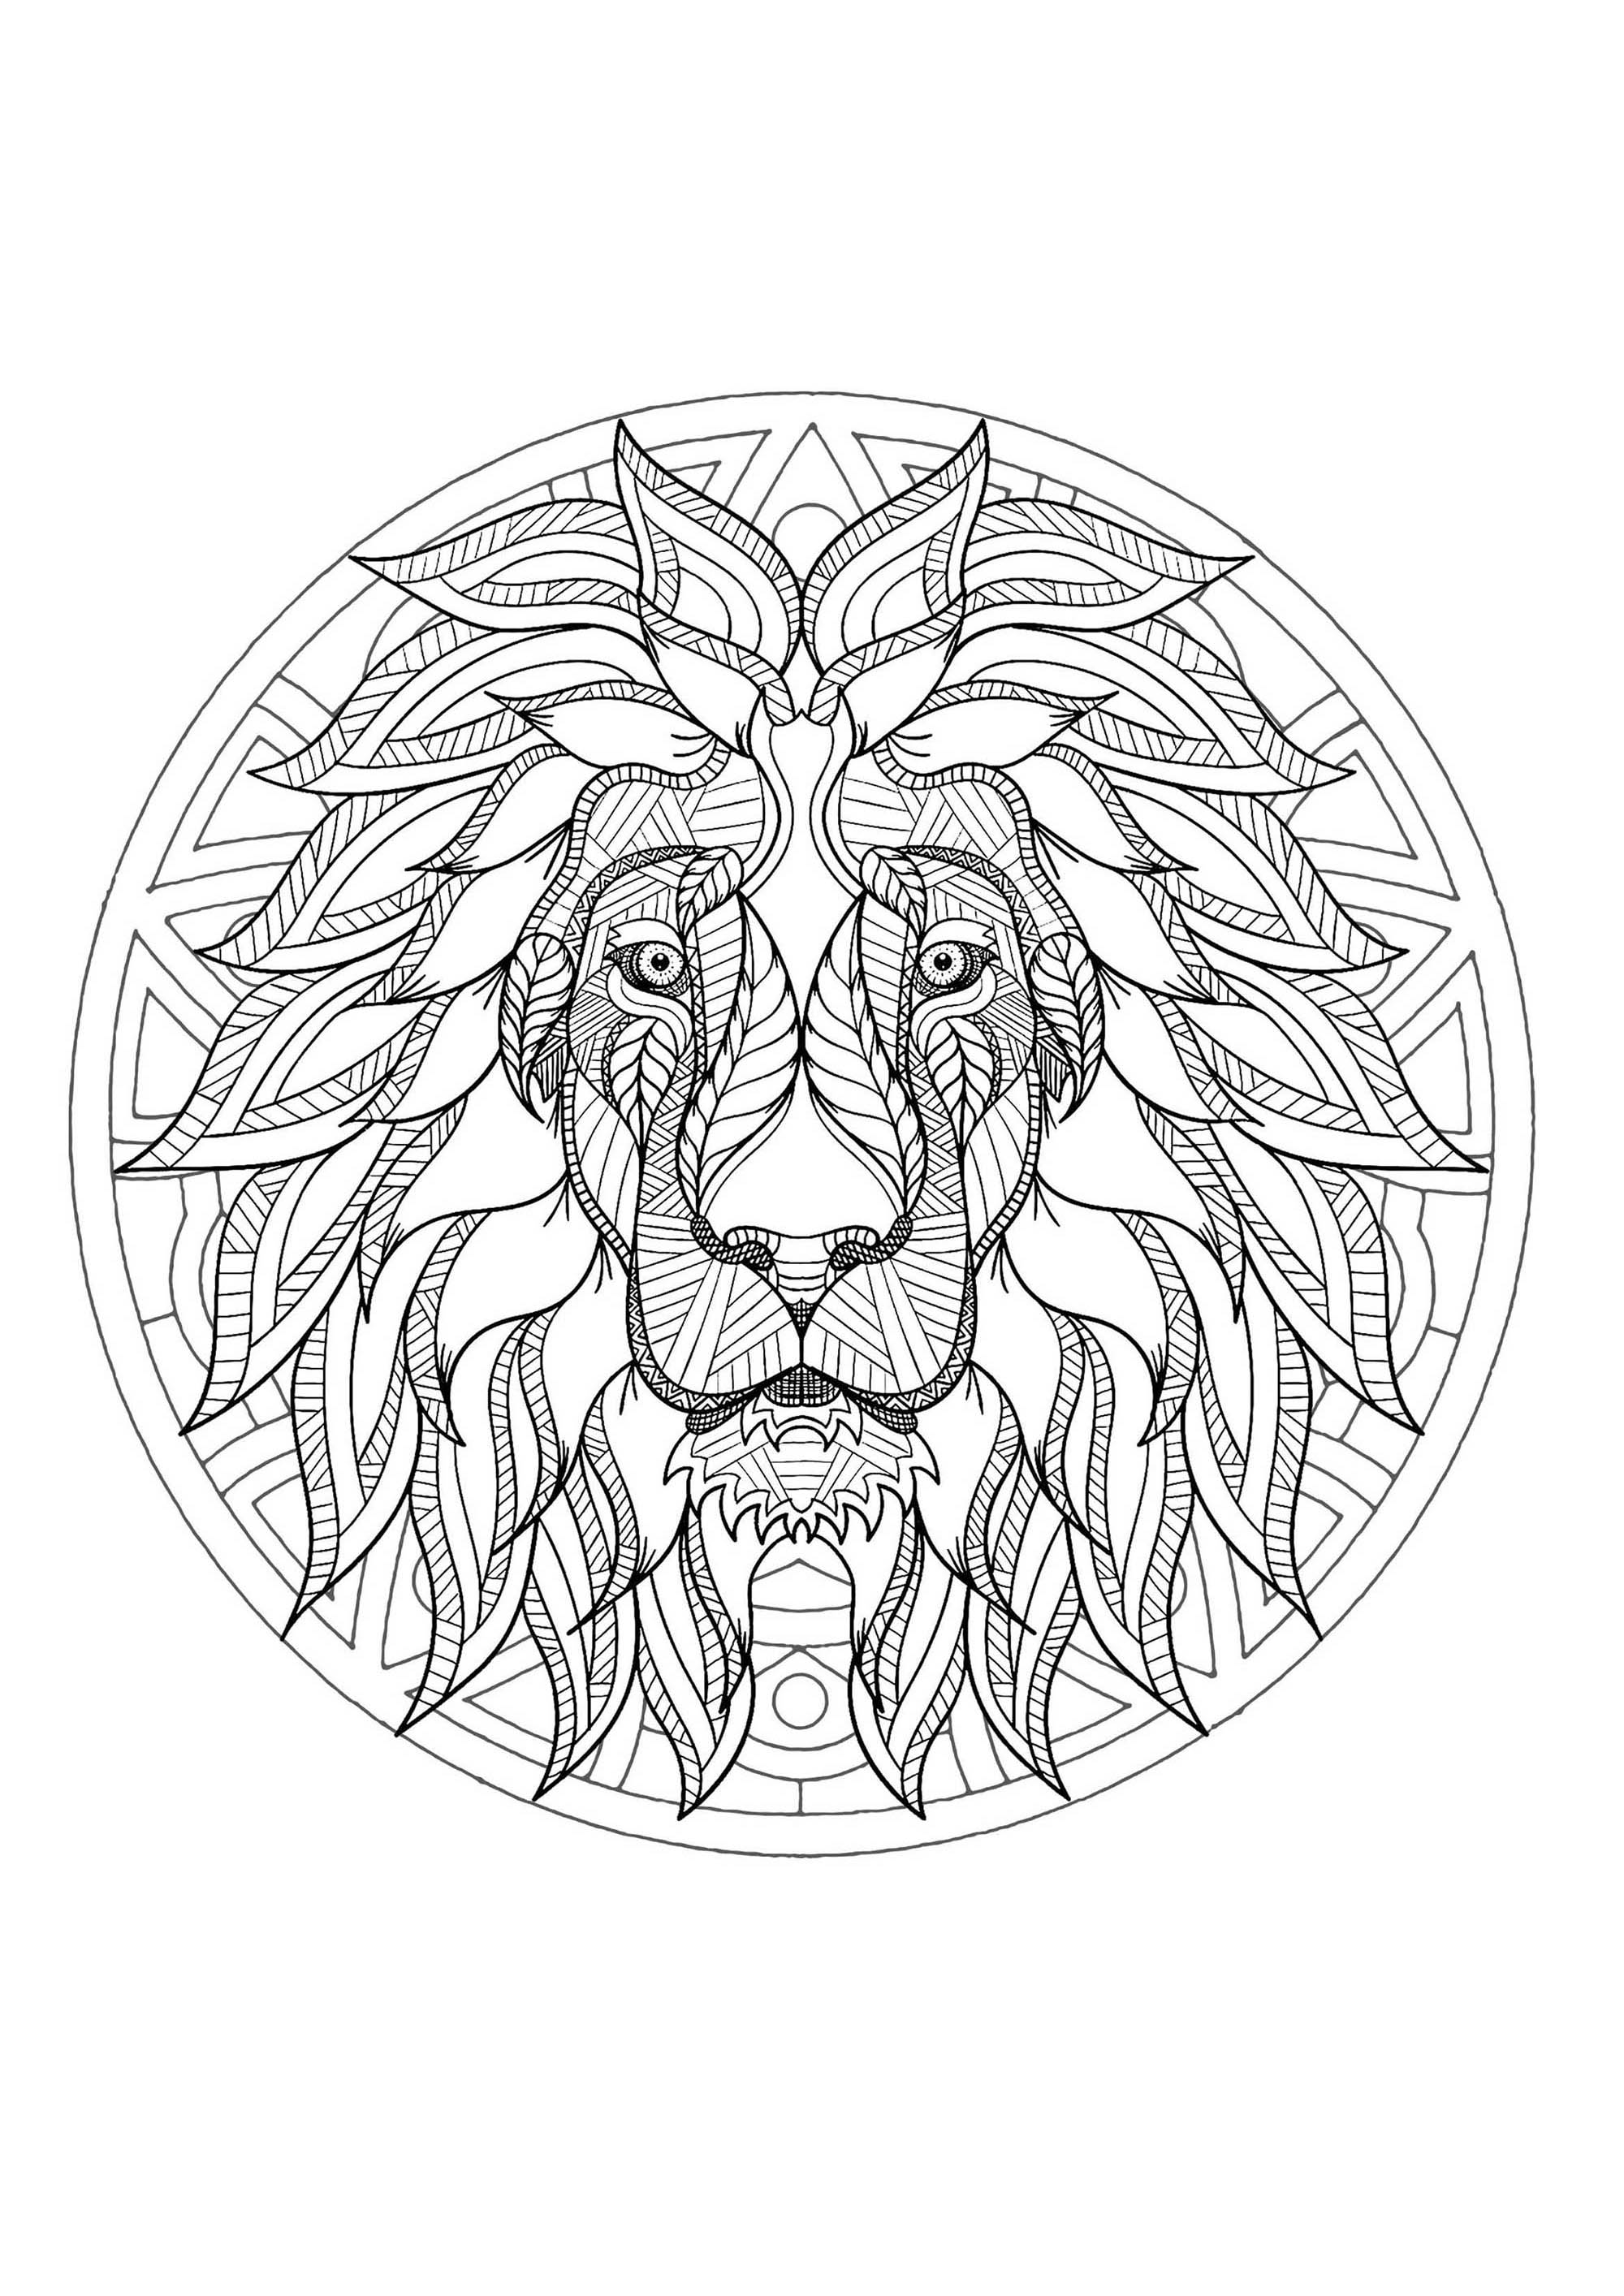 Un magnifique coloriage de Mandala avec une tête de lion, d'une grande qualité et originalité. A vous de choisir les couleurs les plus appropriées.